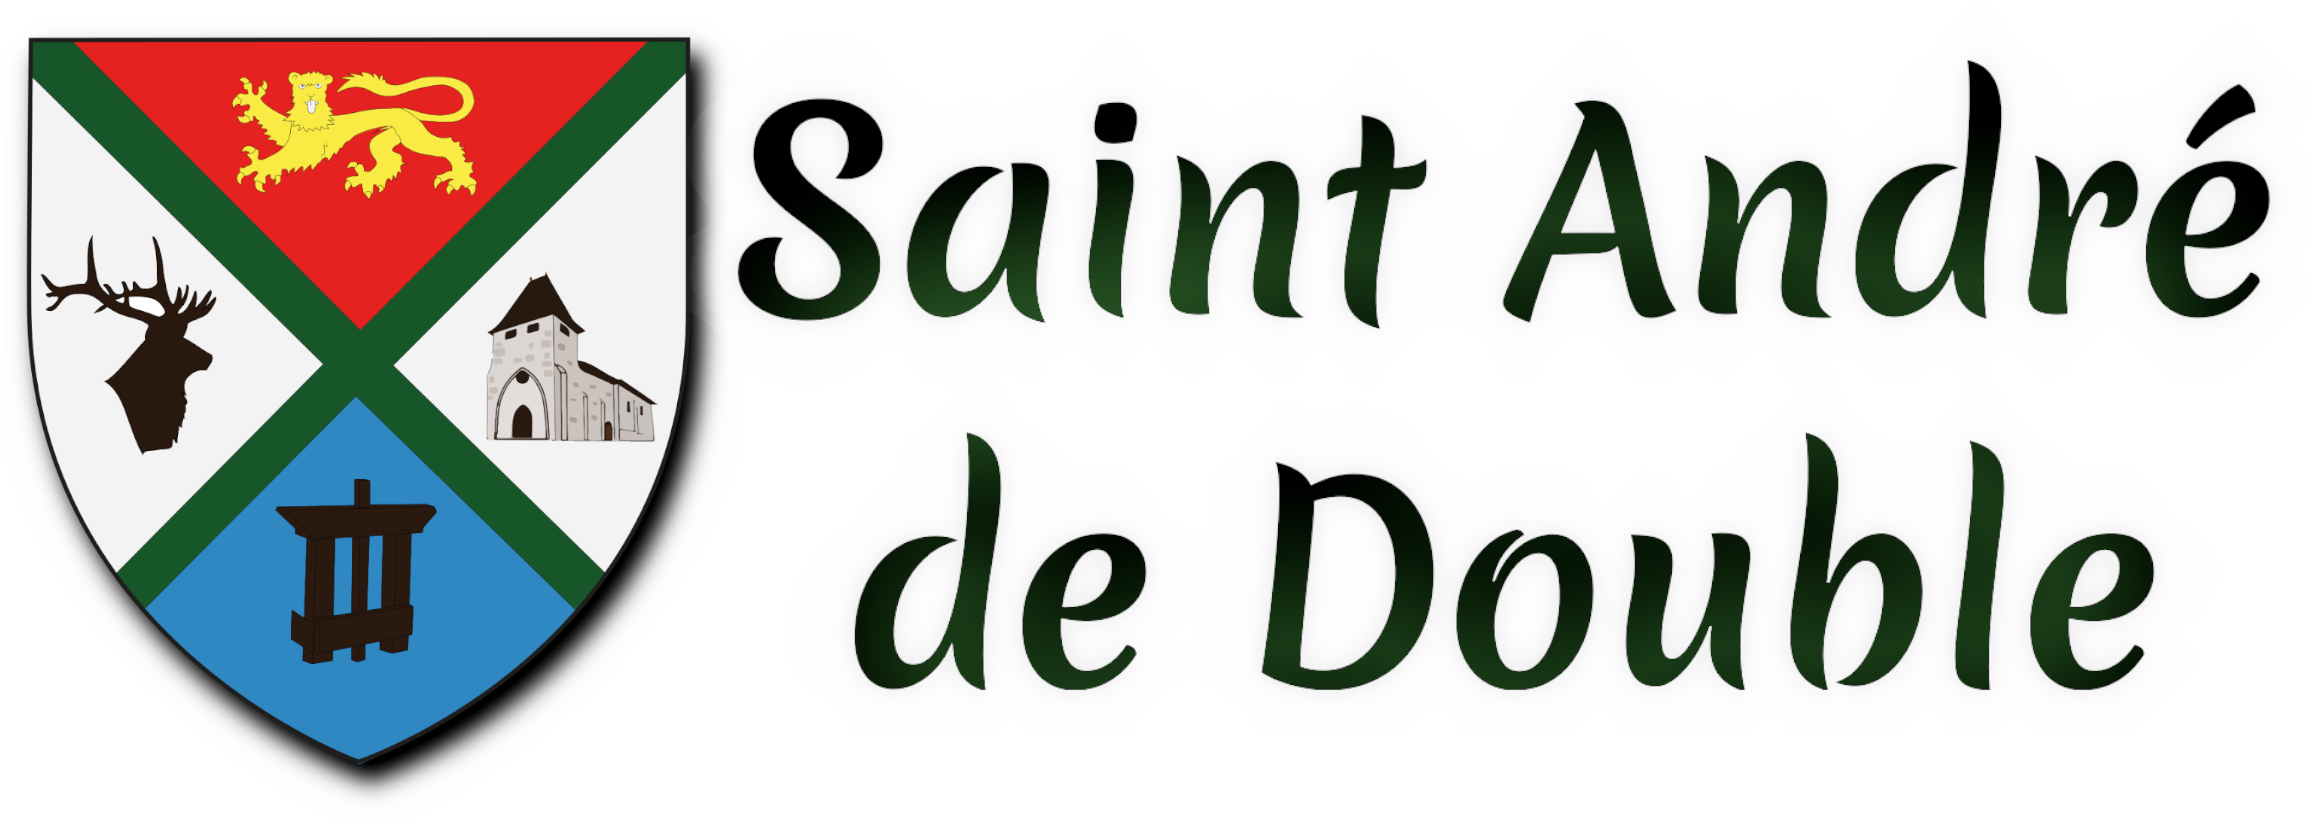 Saint André de Double